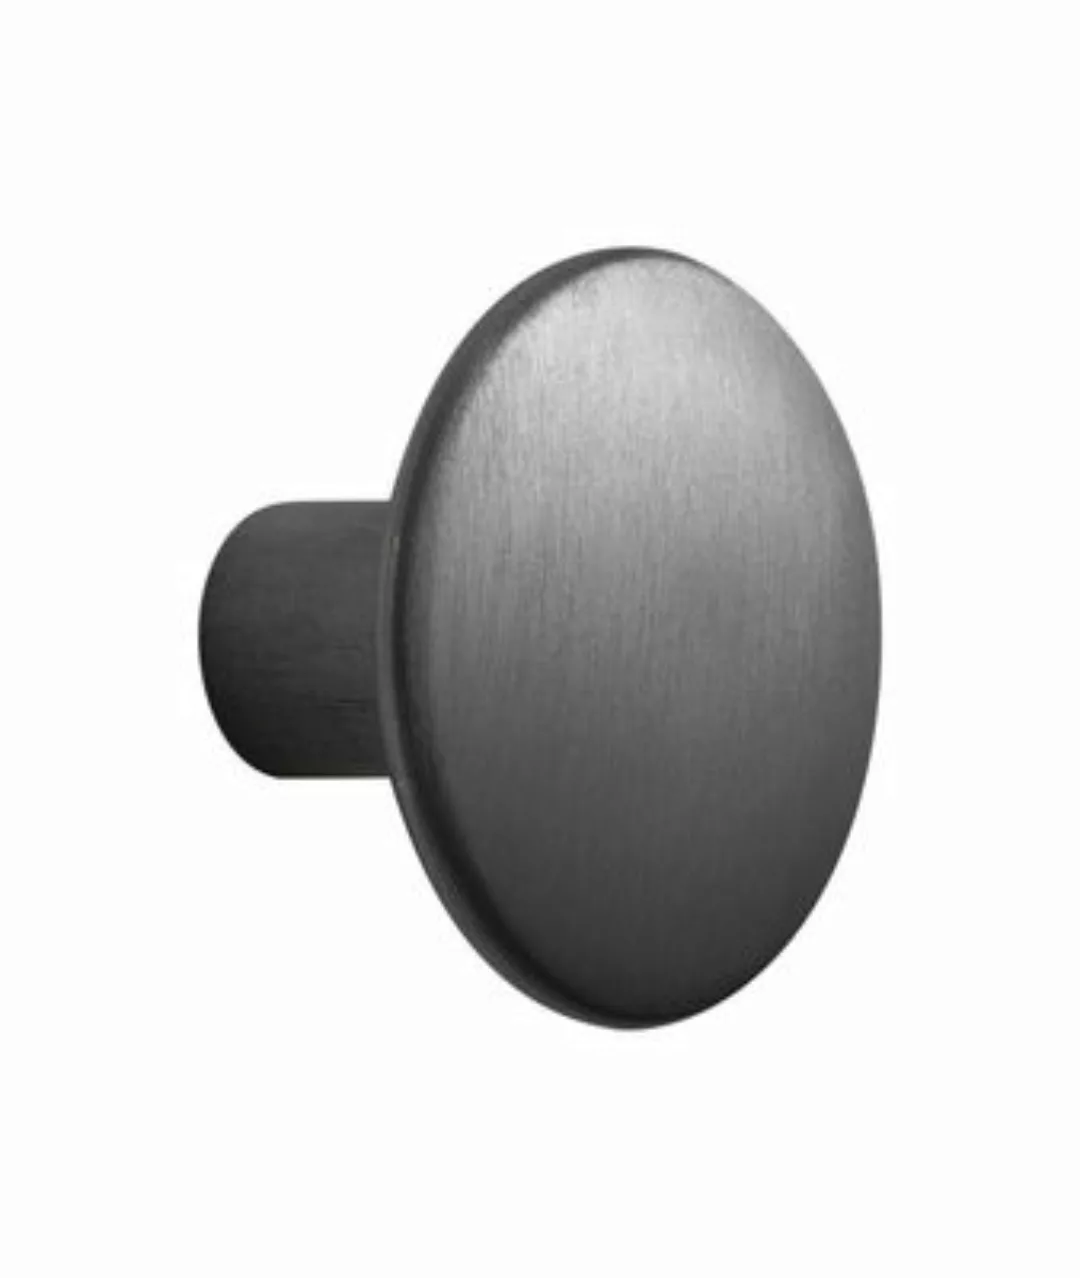 Wandhaken The Dots Metal metall schwarz / Größe M - Ø 3,9 cm - Muuto - Schw günstig online kaufen